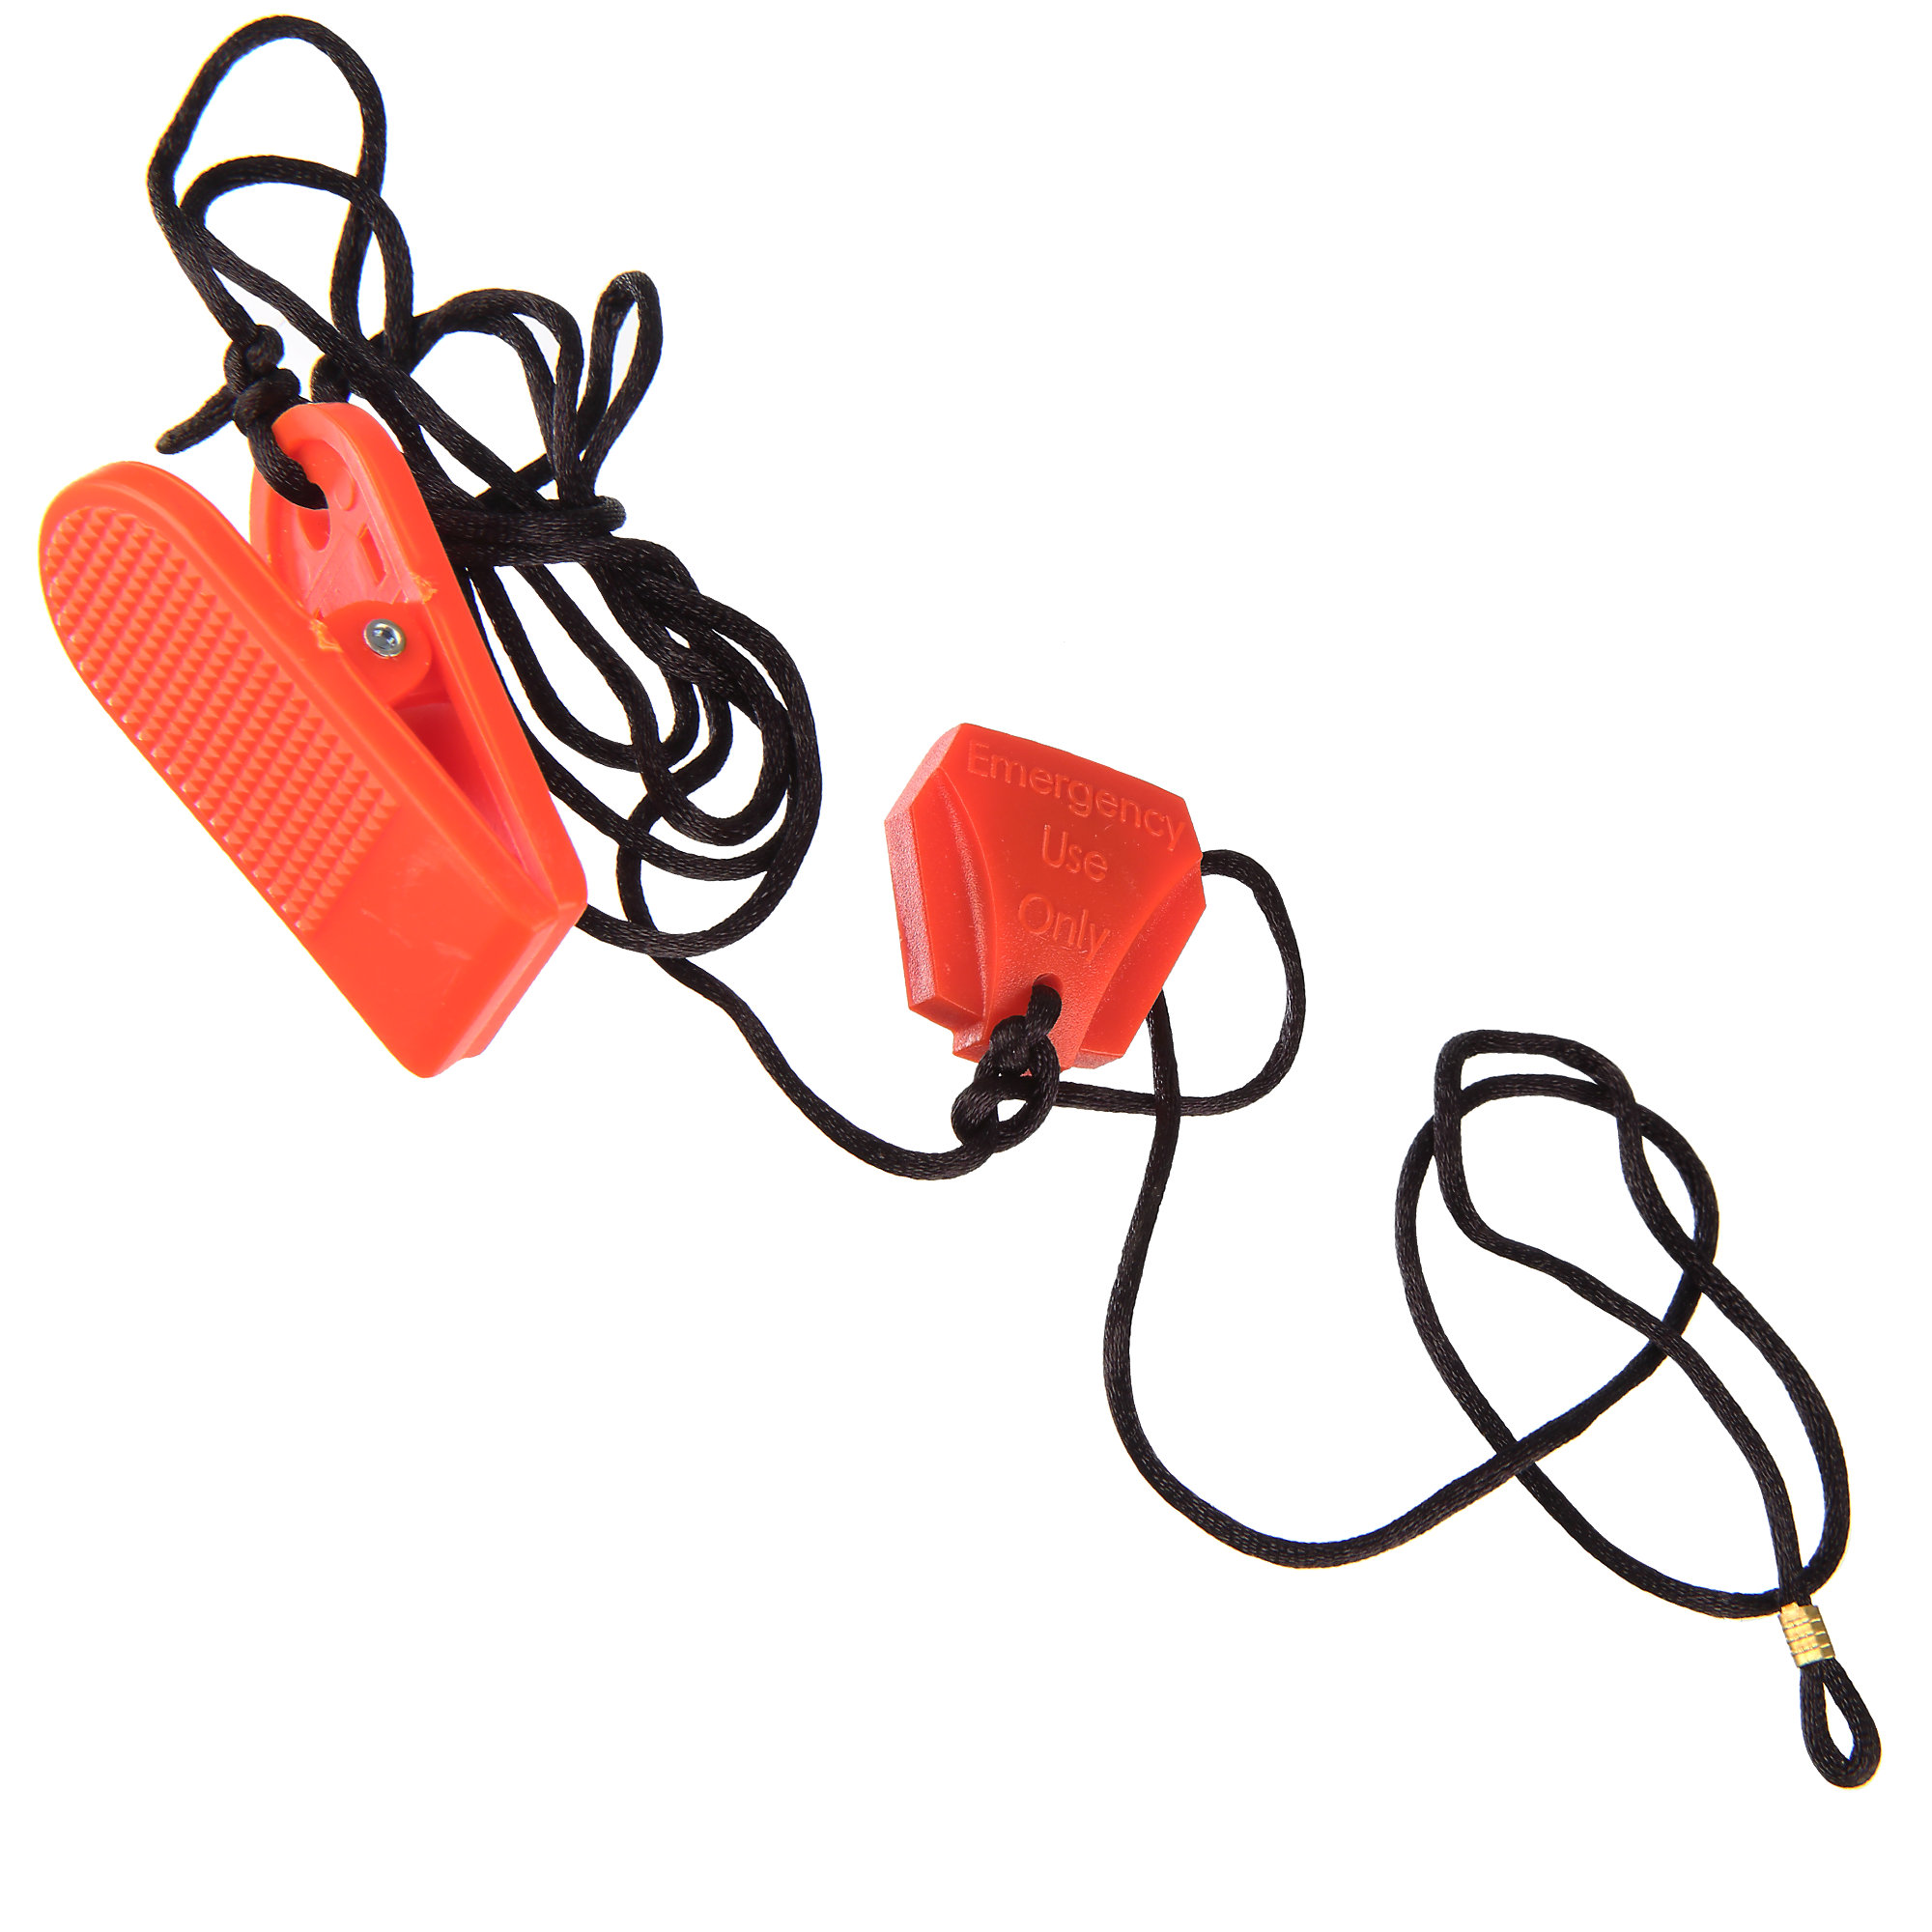 Safety Key, True Treadmill PS900